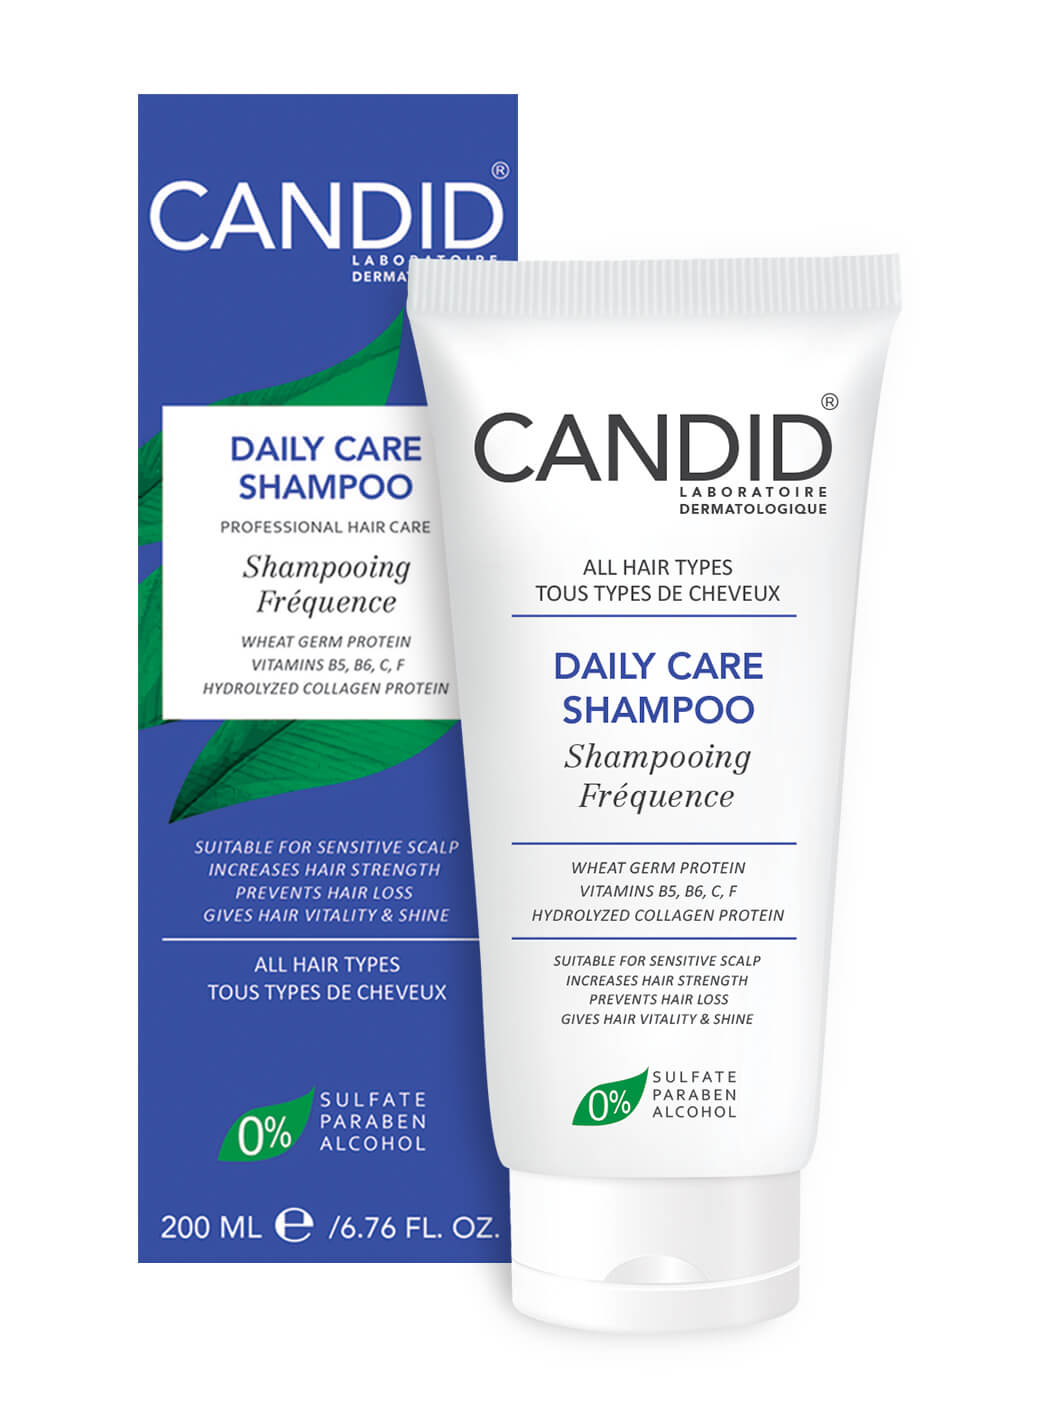  Daily Care Shampoo  - شامپو ویتامینه و پروتئینه روزانه